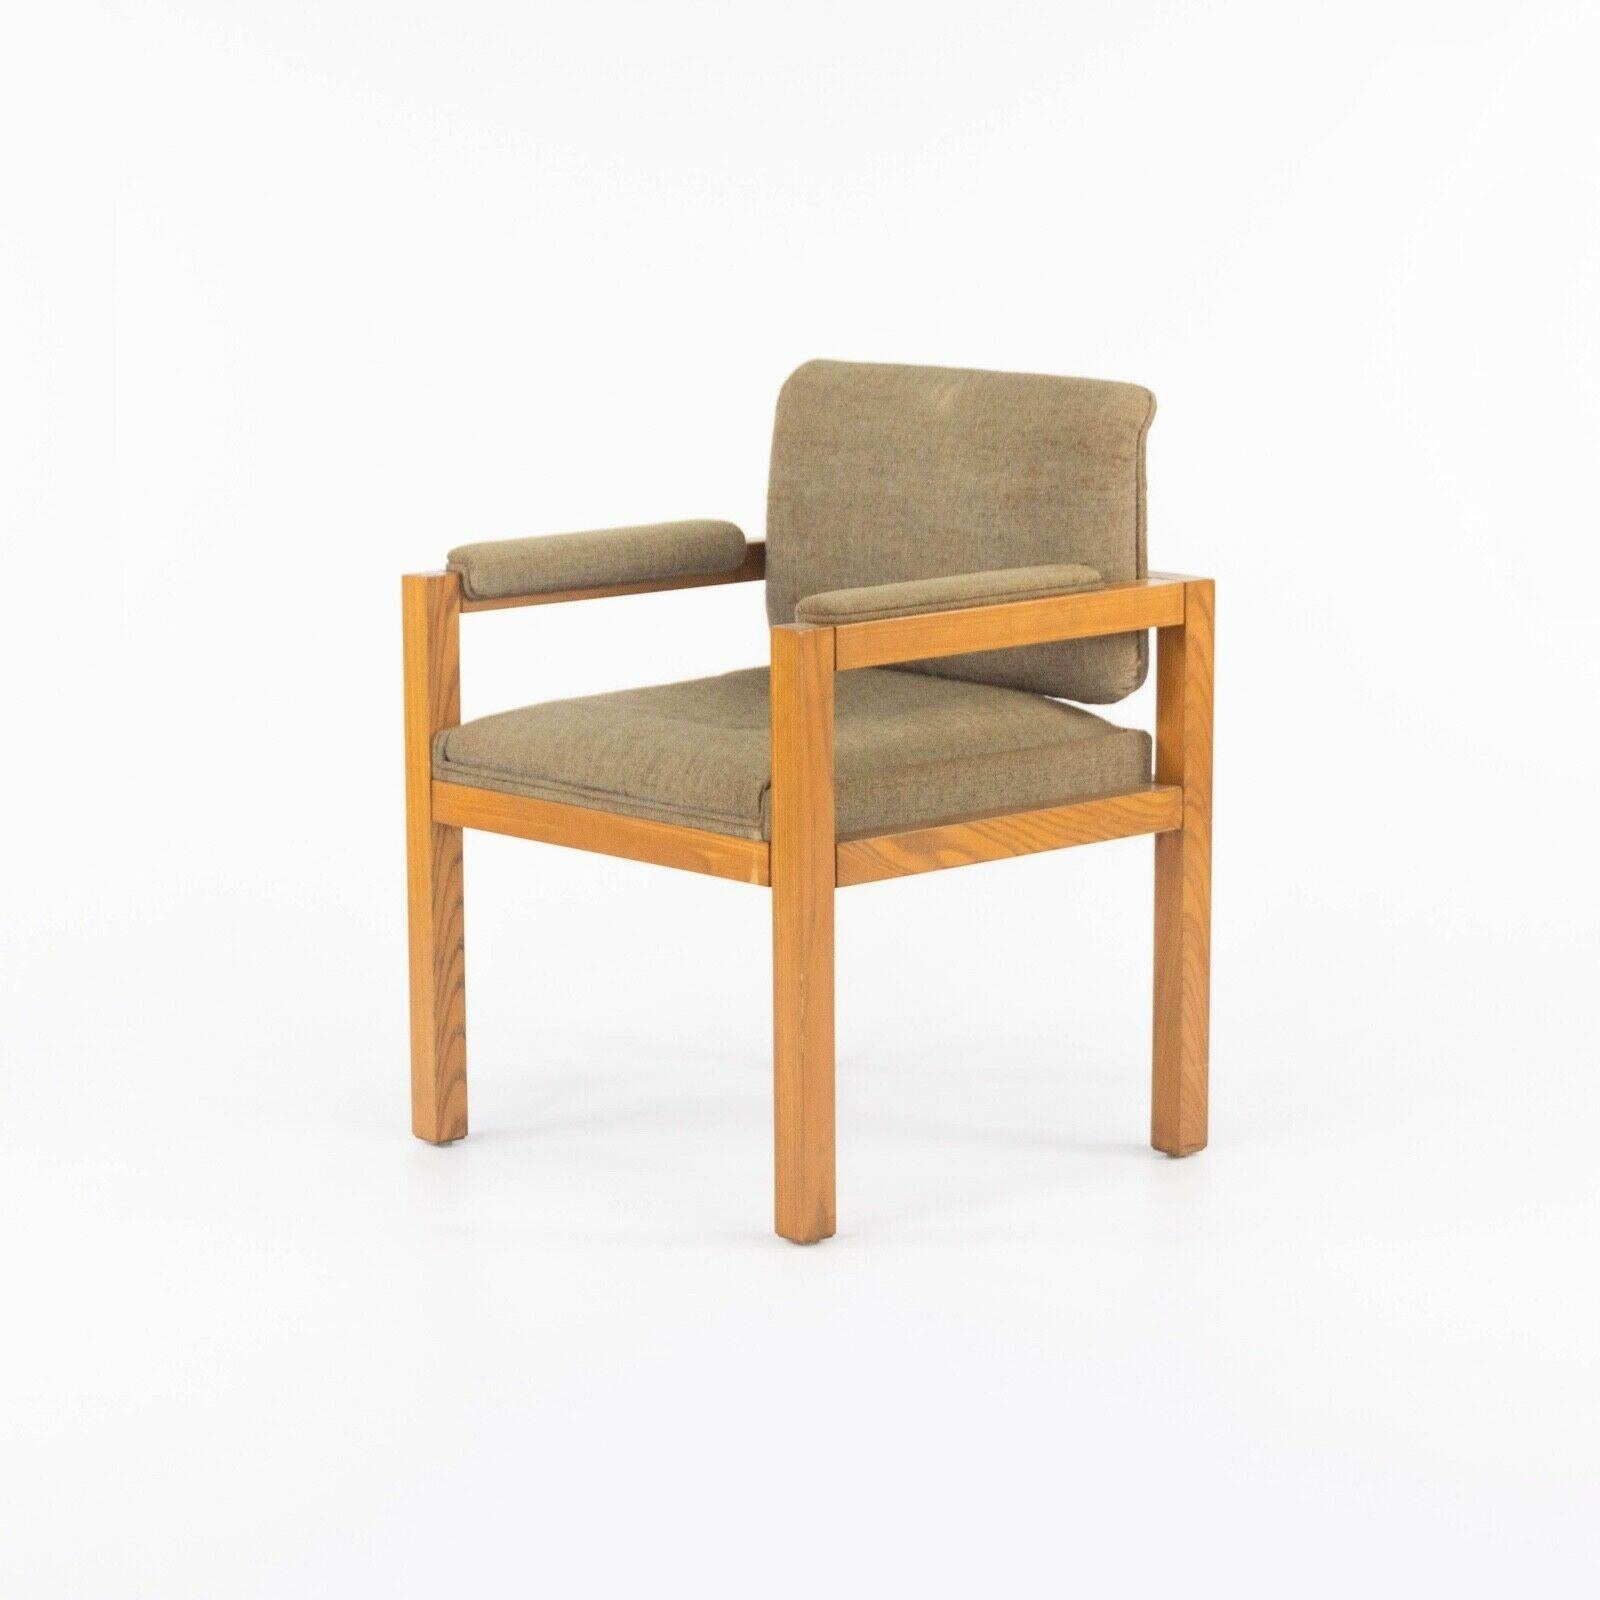 La vente porte sur un fauteuil en chêne de production et en tissu fauve foncé datant d'environ 1975, conçu par le célèbre architecte et designer de meubles Warren Platner. Cette pièce fait partie d'une série que Platner a conçue pour CI Designs dans